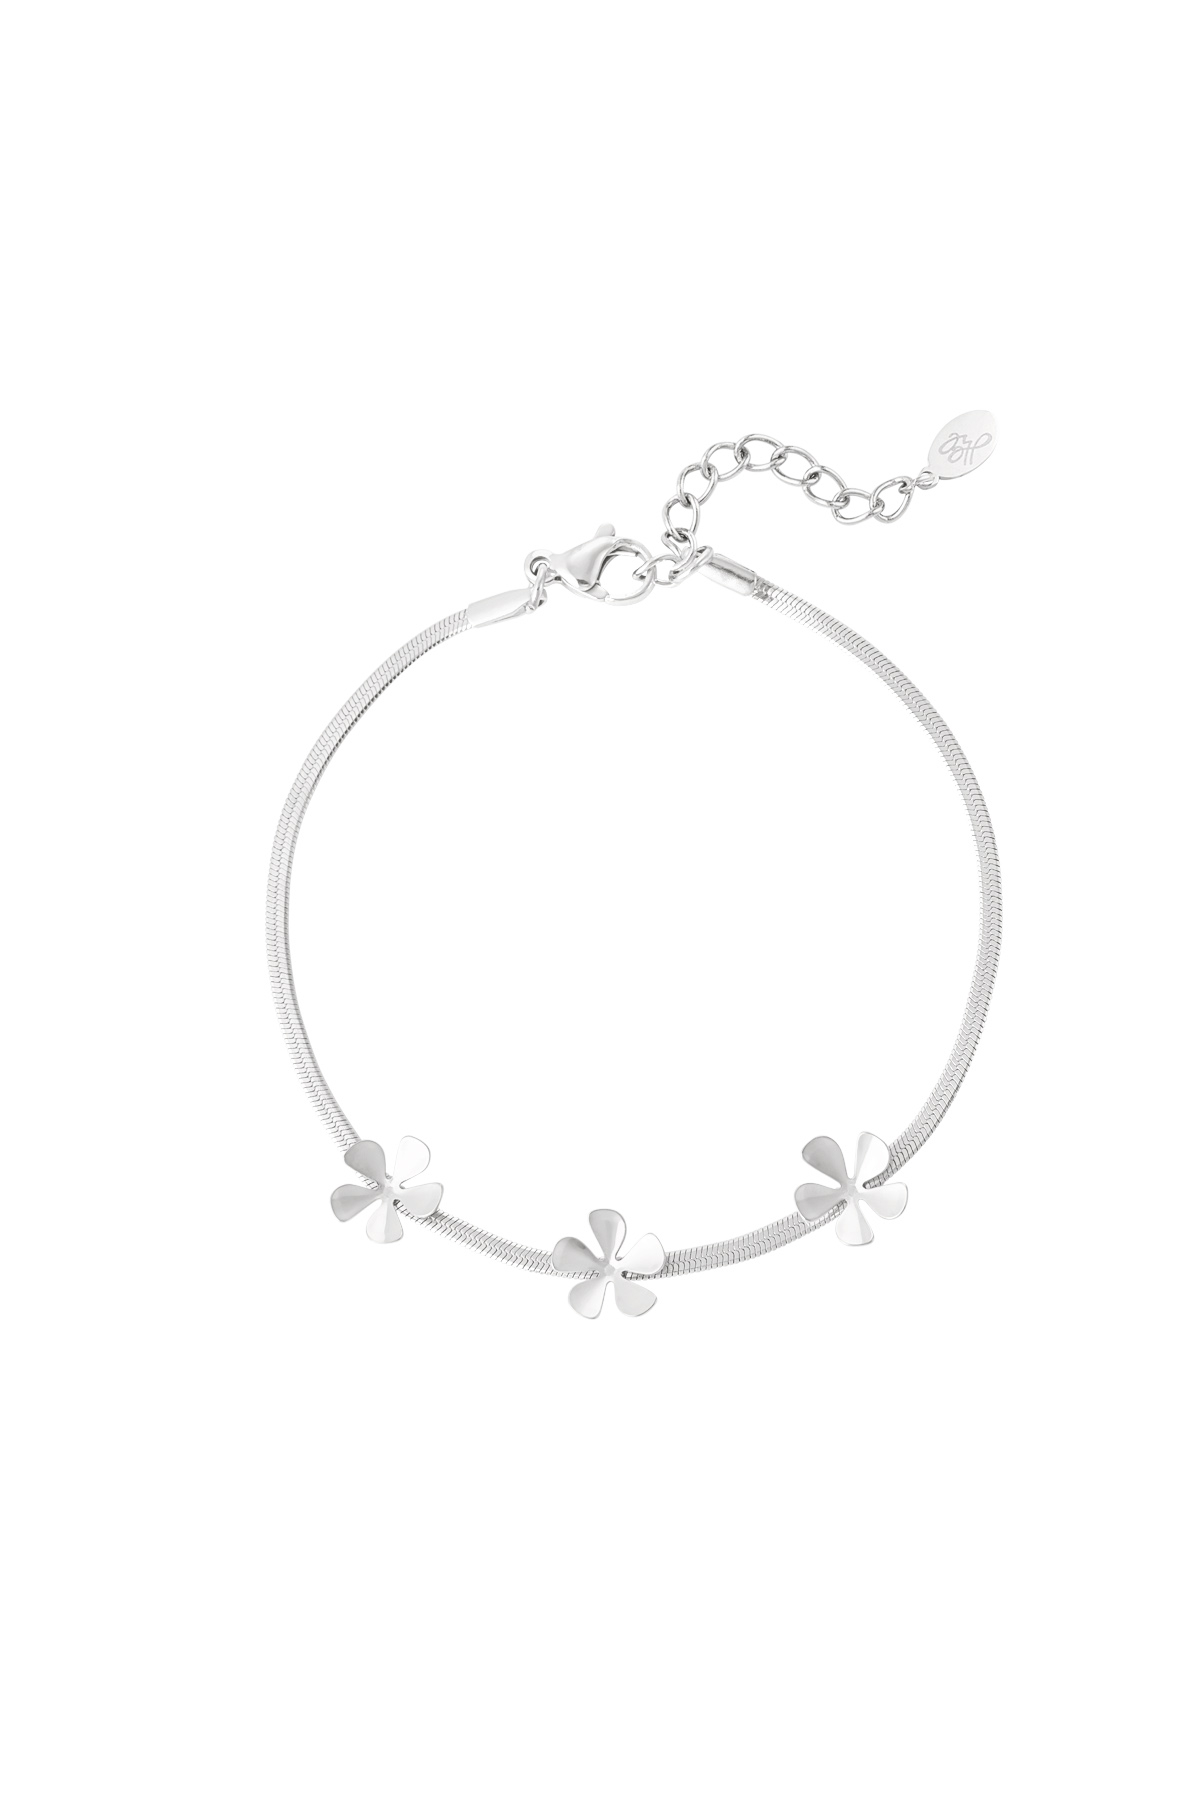 Bracelet 3 basic flowers - Silver h5 